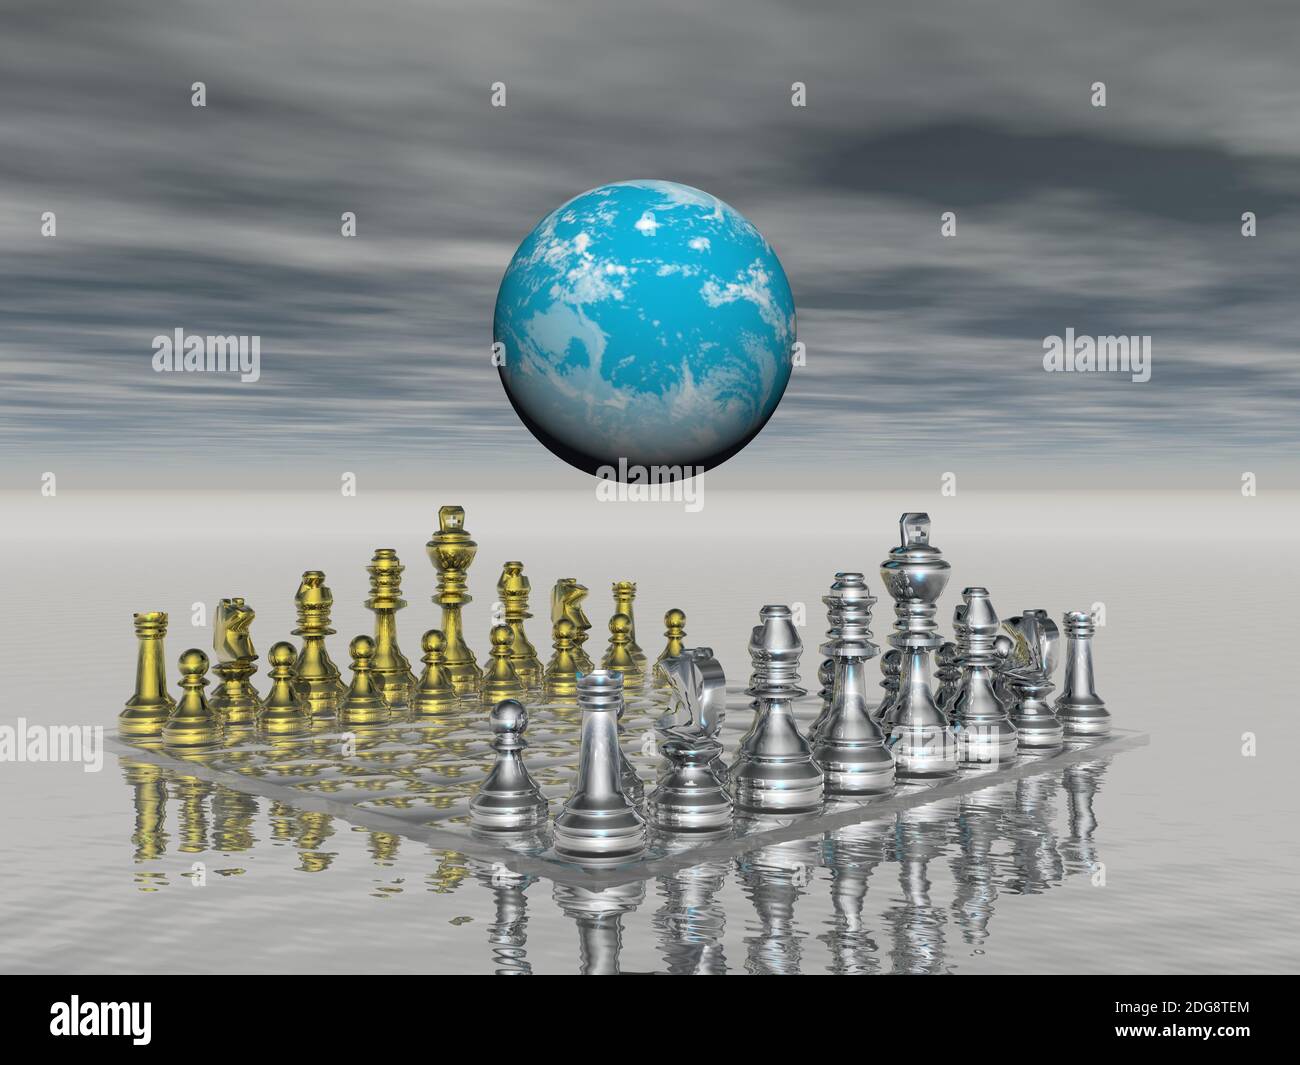 Schach Geschäftsidee für Wettbewerb - 3d-Rendering Stockfoto